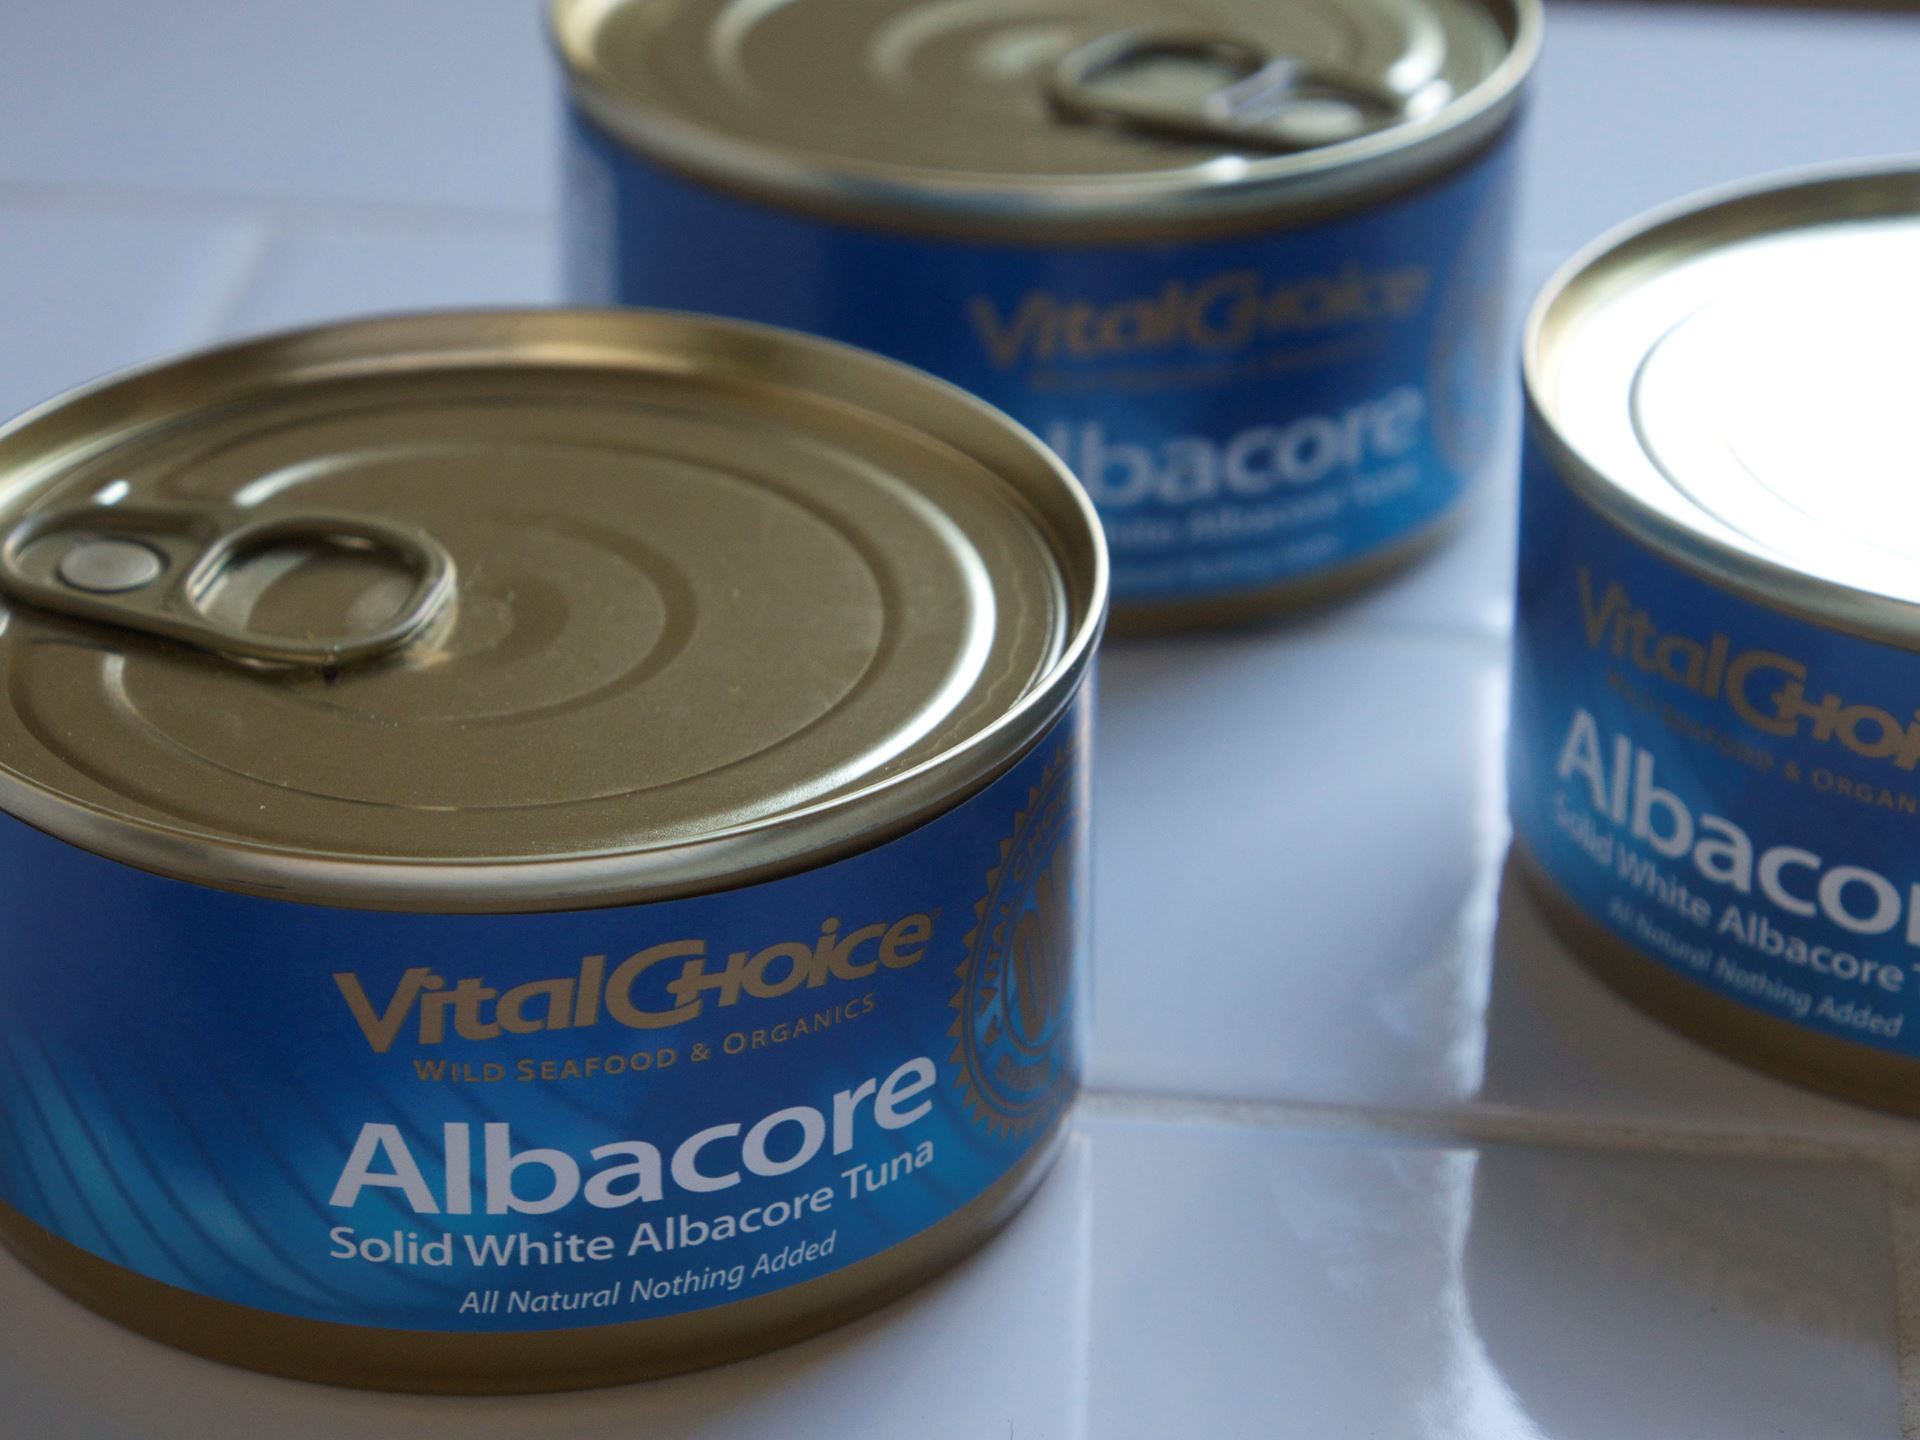 Picture of Vital Choice Albacore Tuna 6 oz.